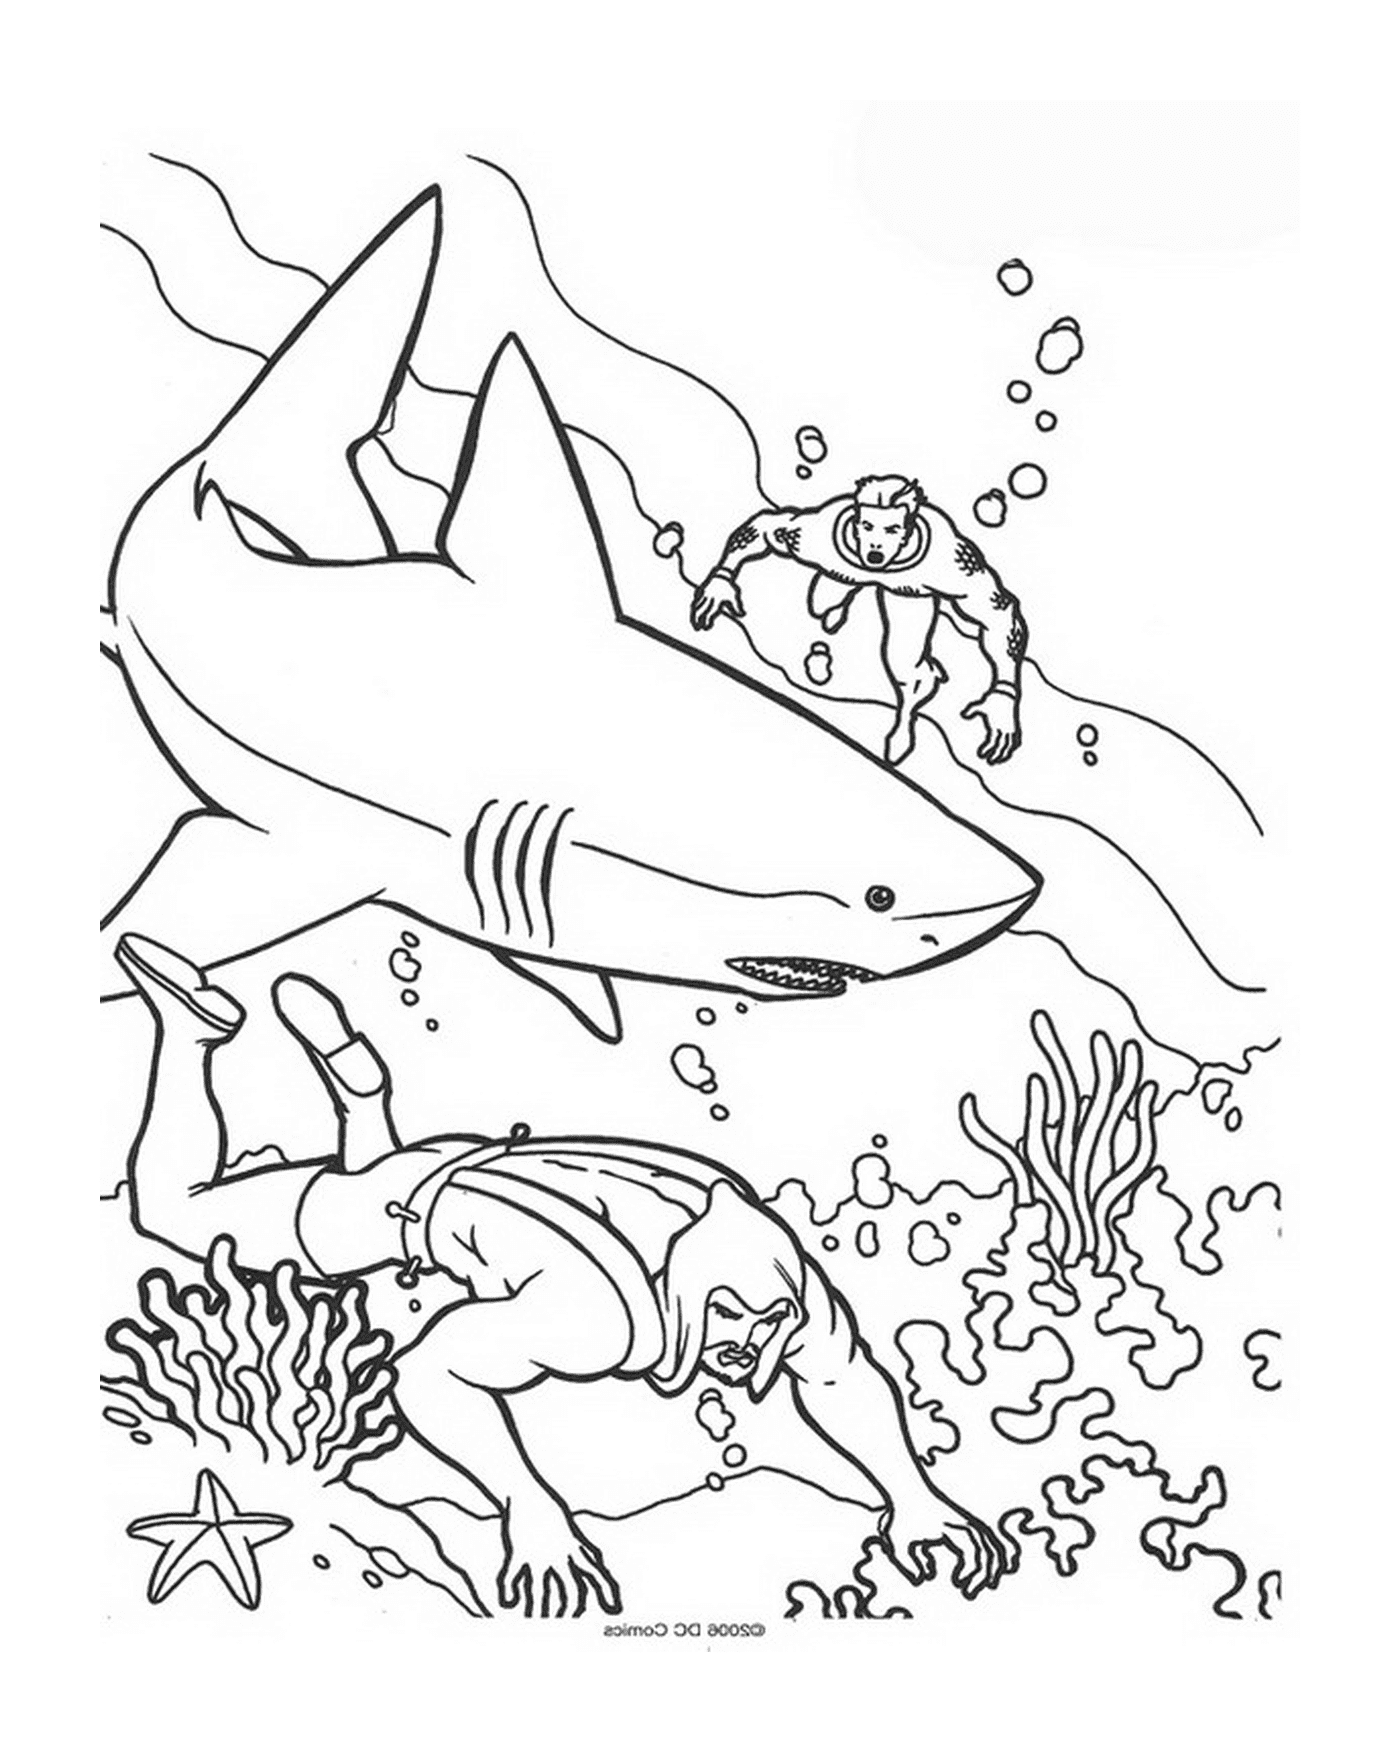  Un hombre y una mujer nadando en el océano con tiburones 